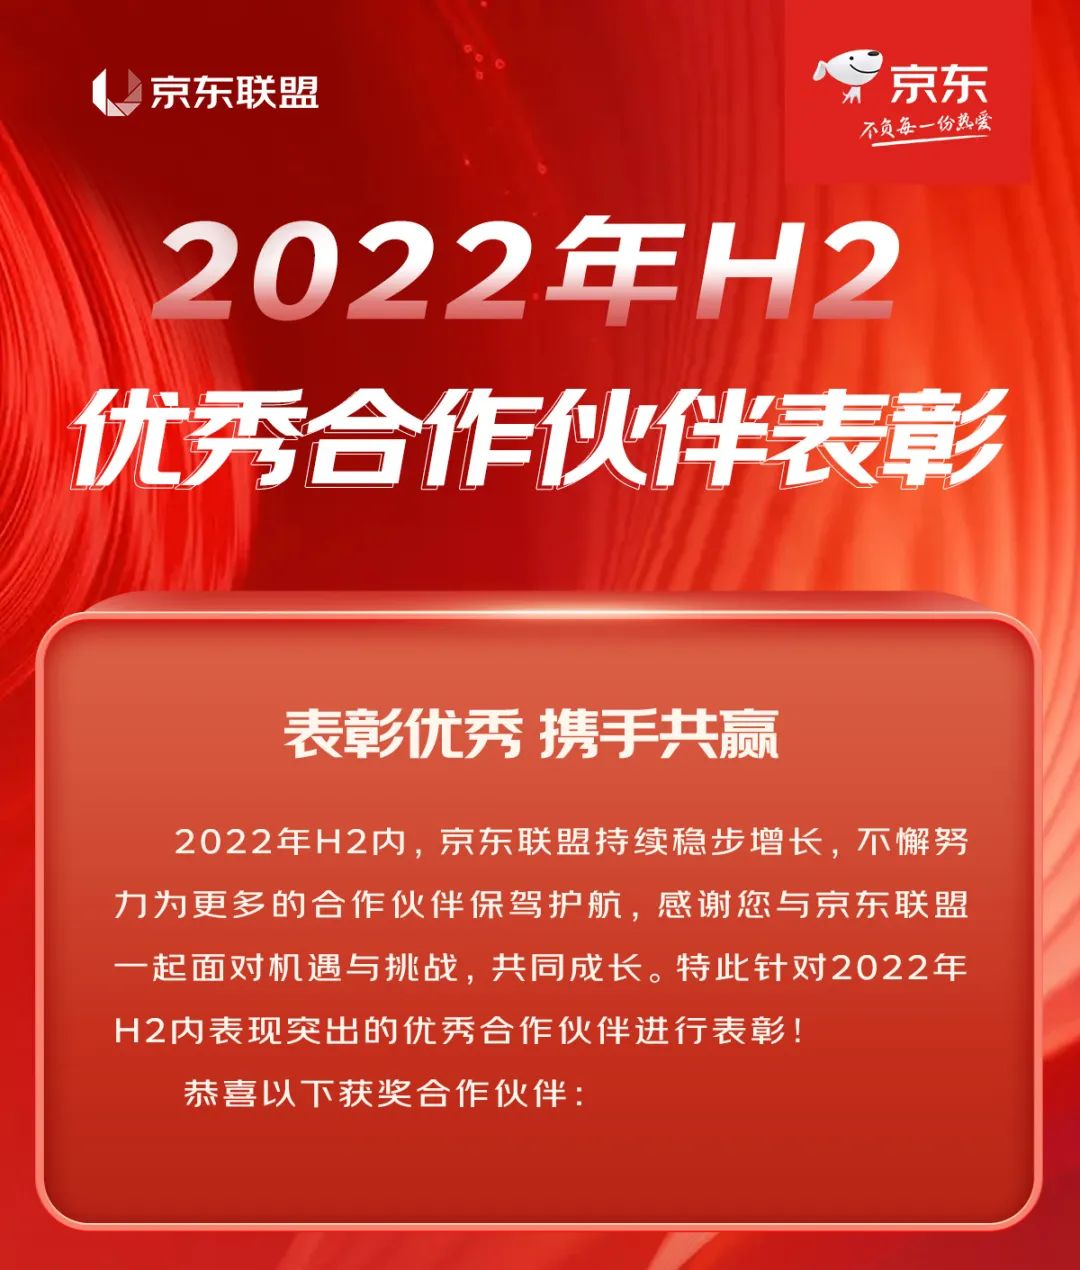 祝贺！2022年H2优秀合作伙伴表彰公示，快来看看都有谁!